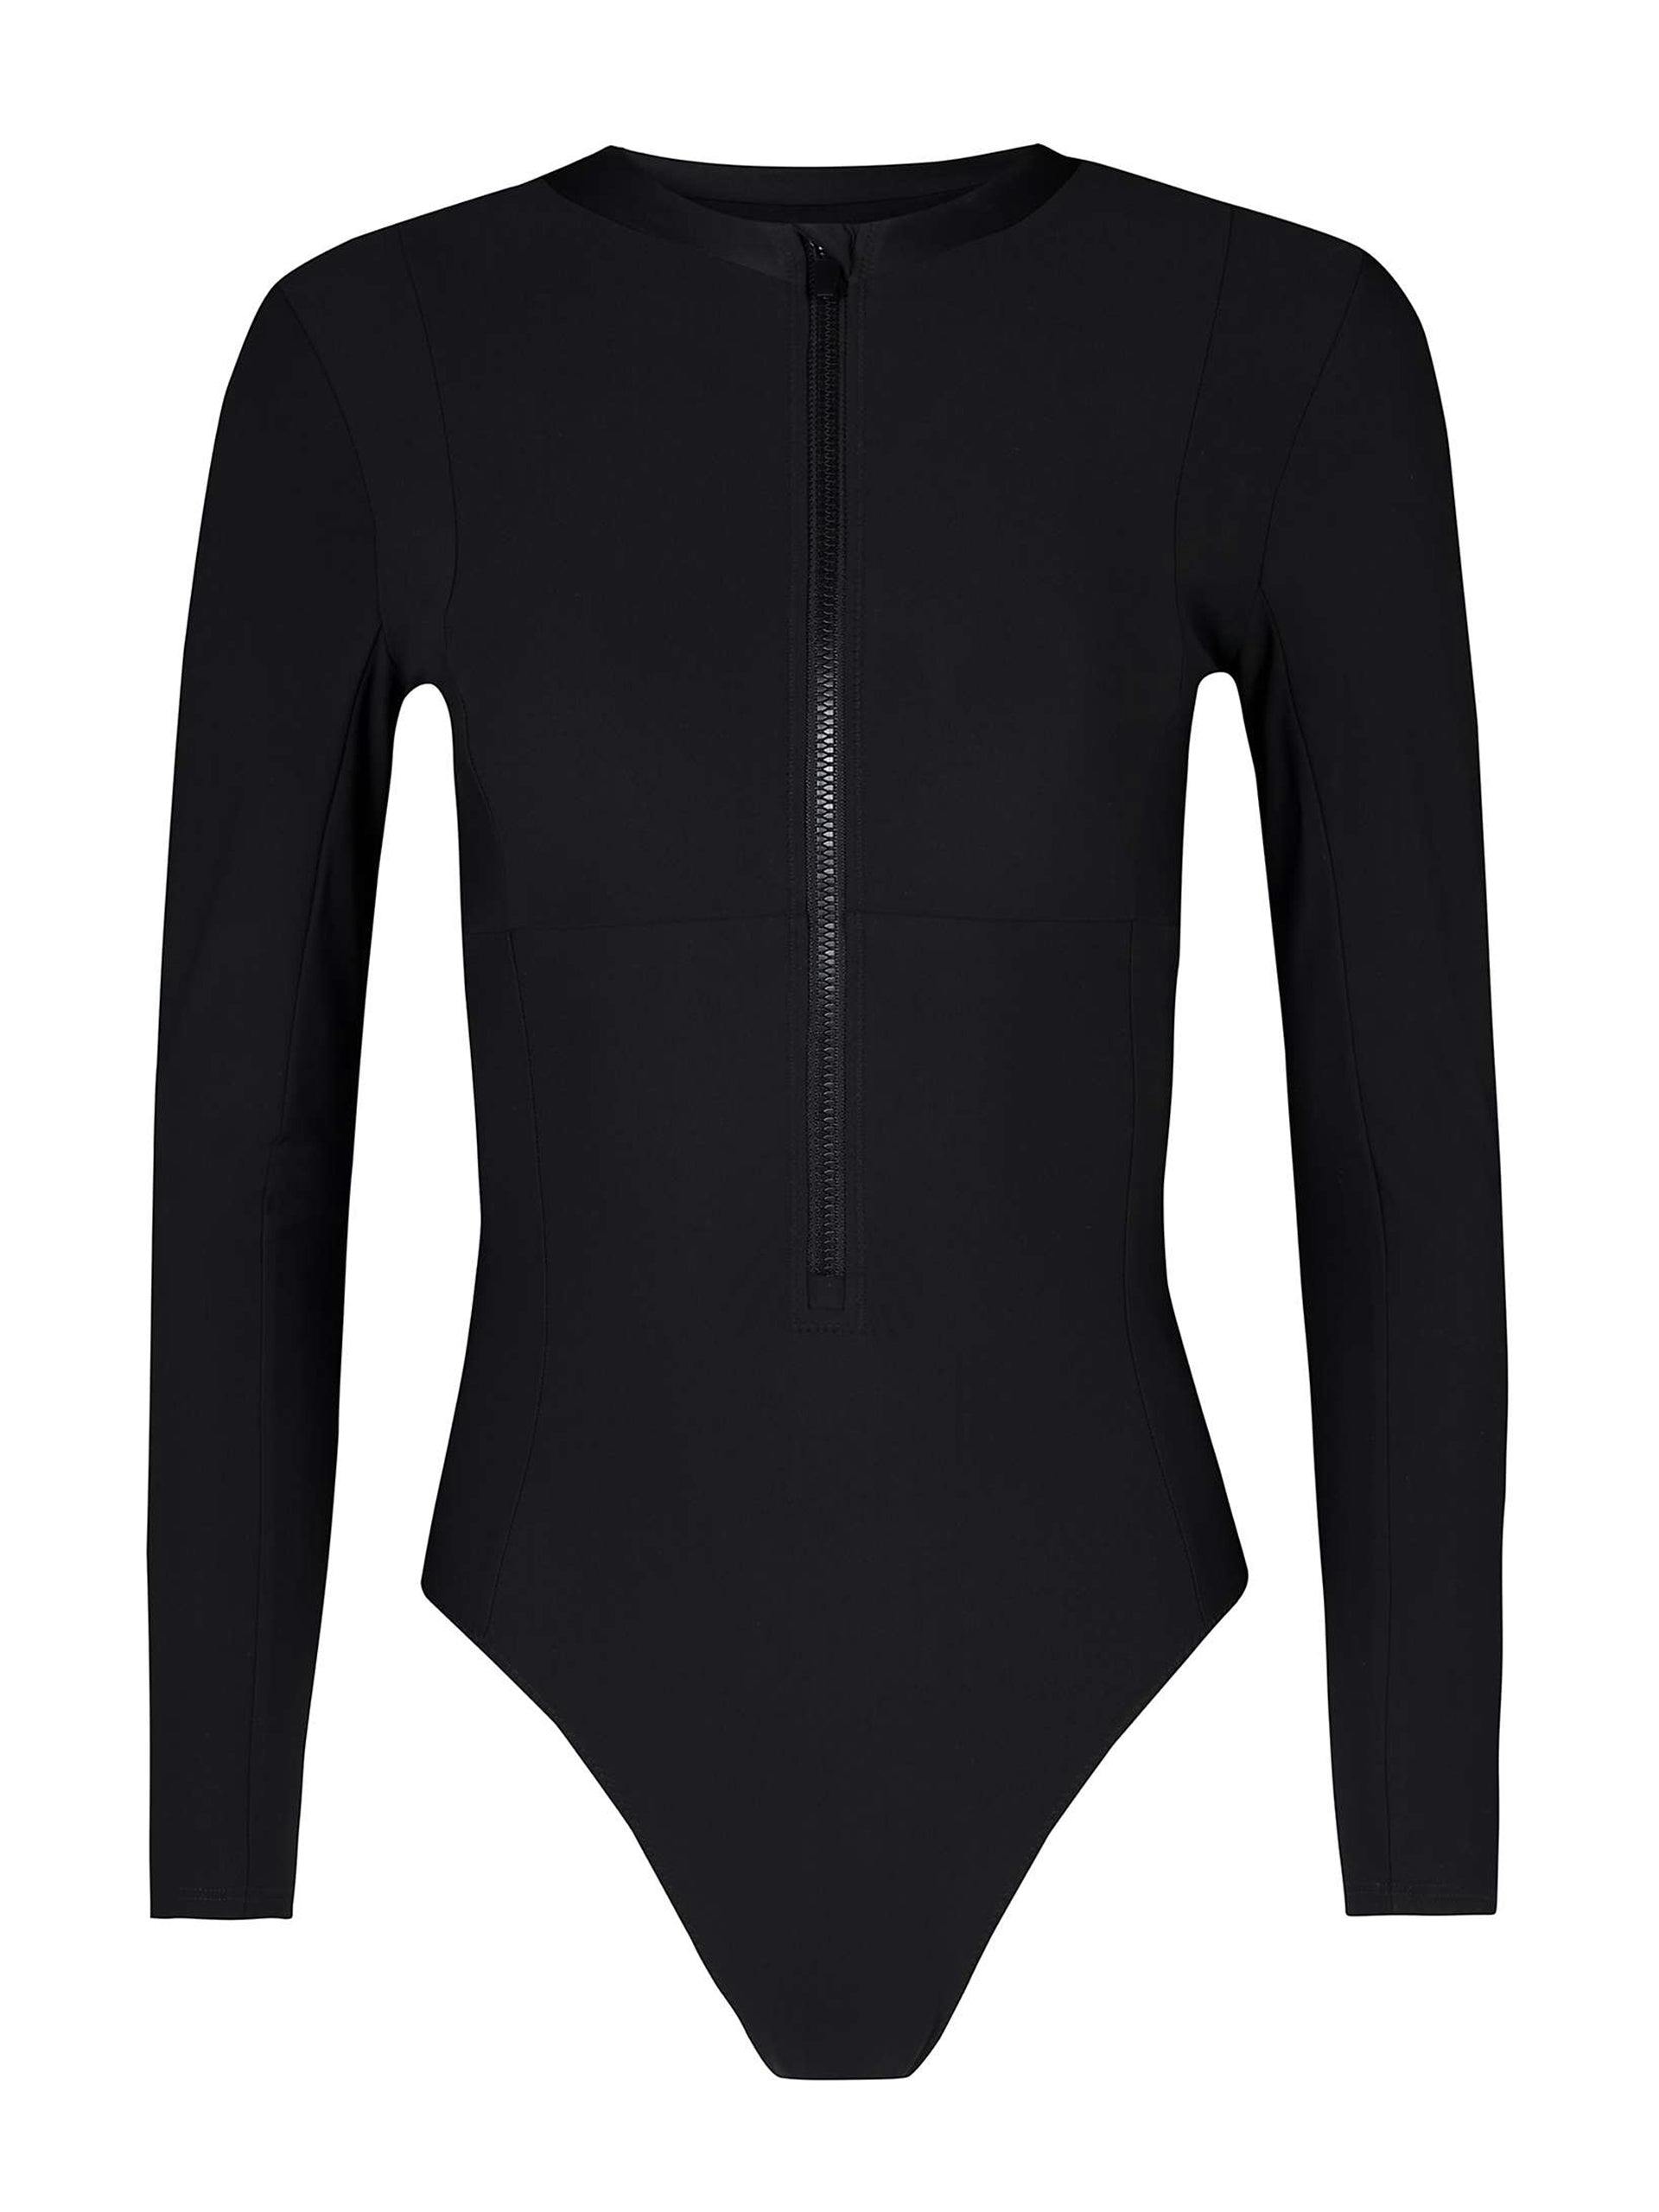 Long-sleeved black swimsuit